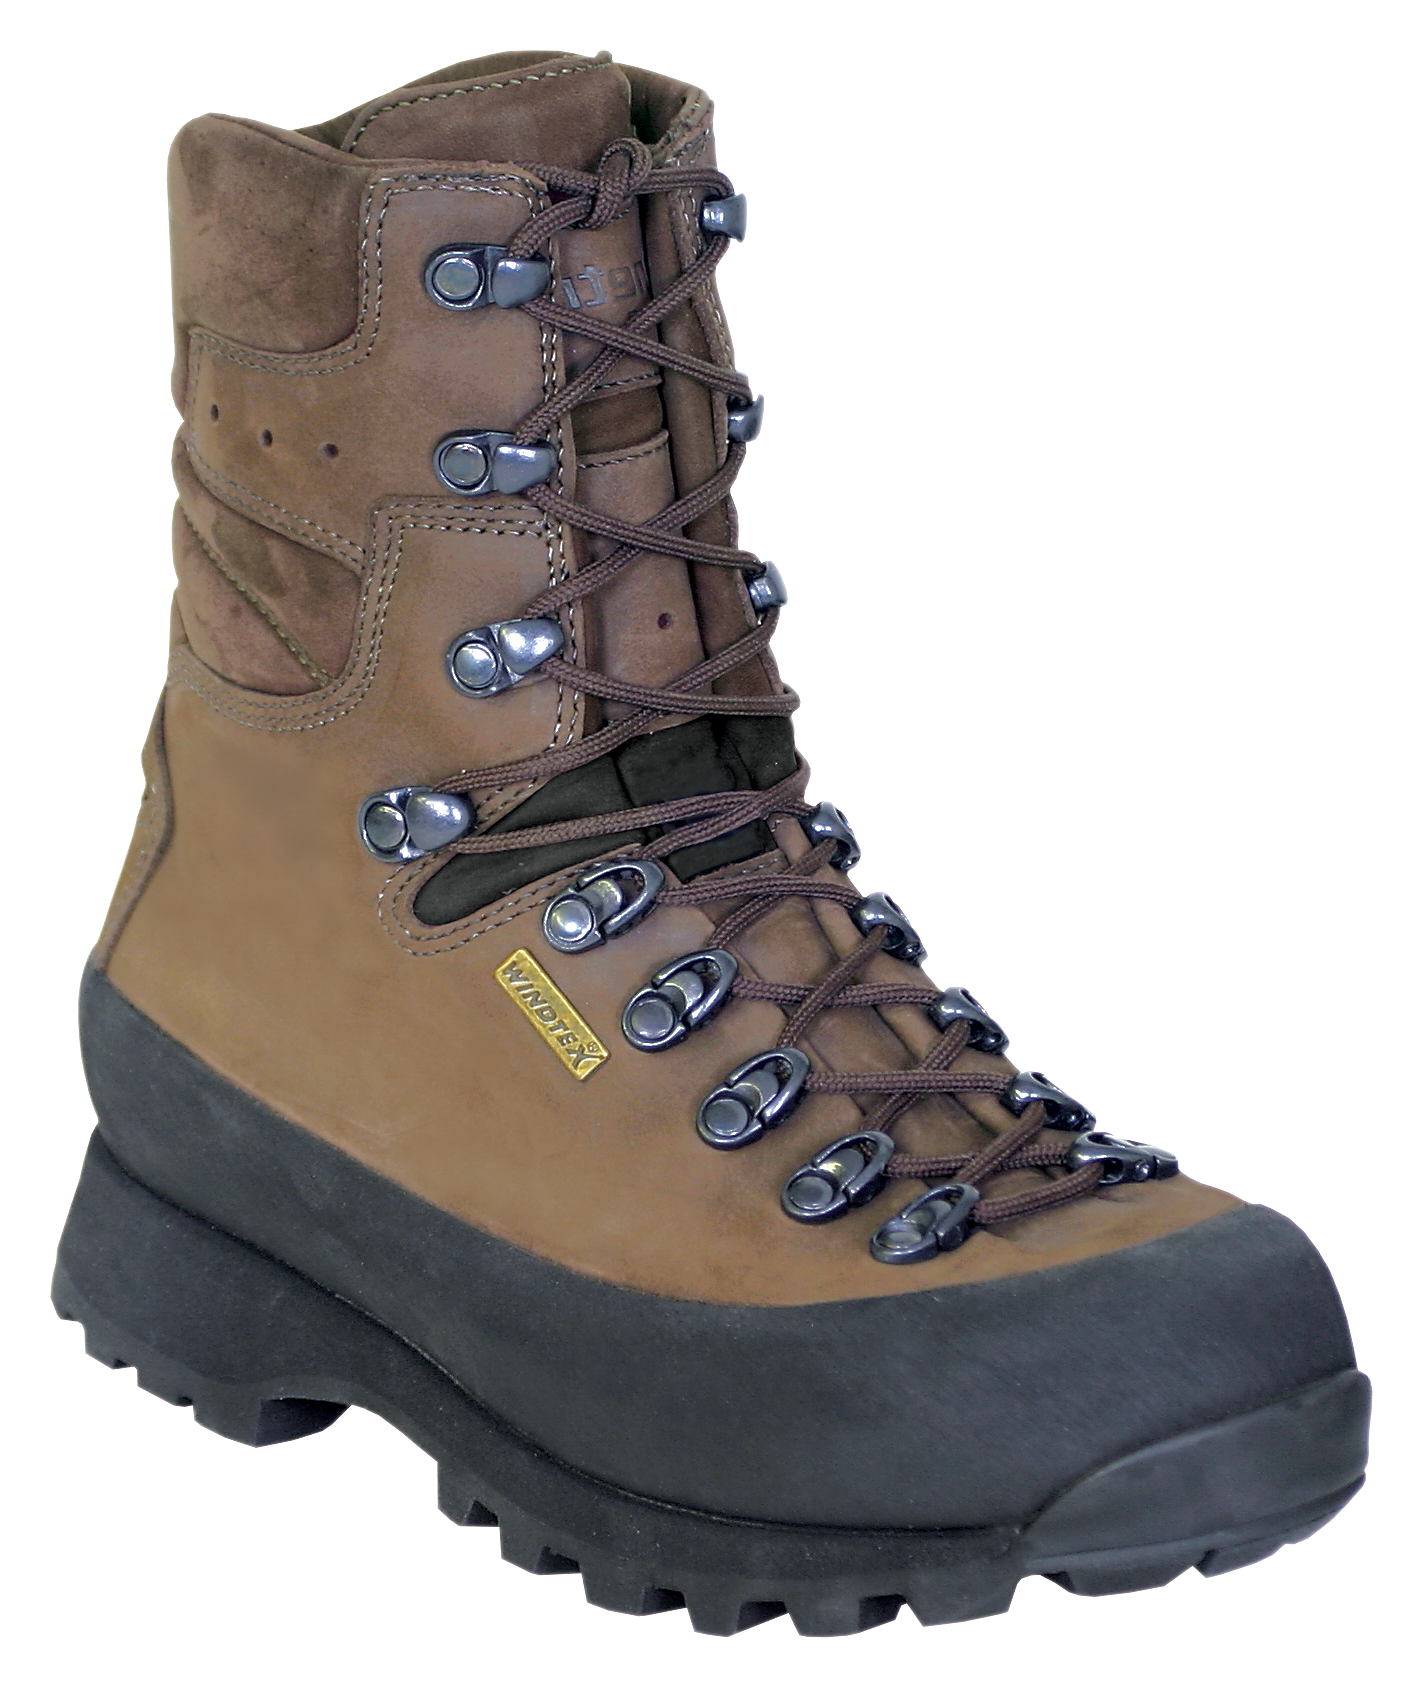 Kenetrek Hiker Waterproof Hiking Boots for Ladies - Brown -  11M